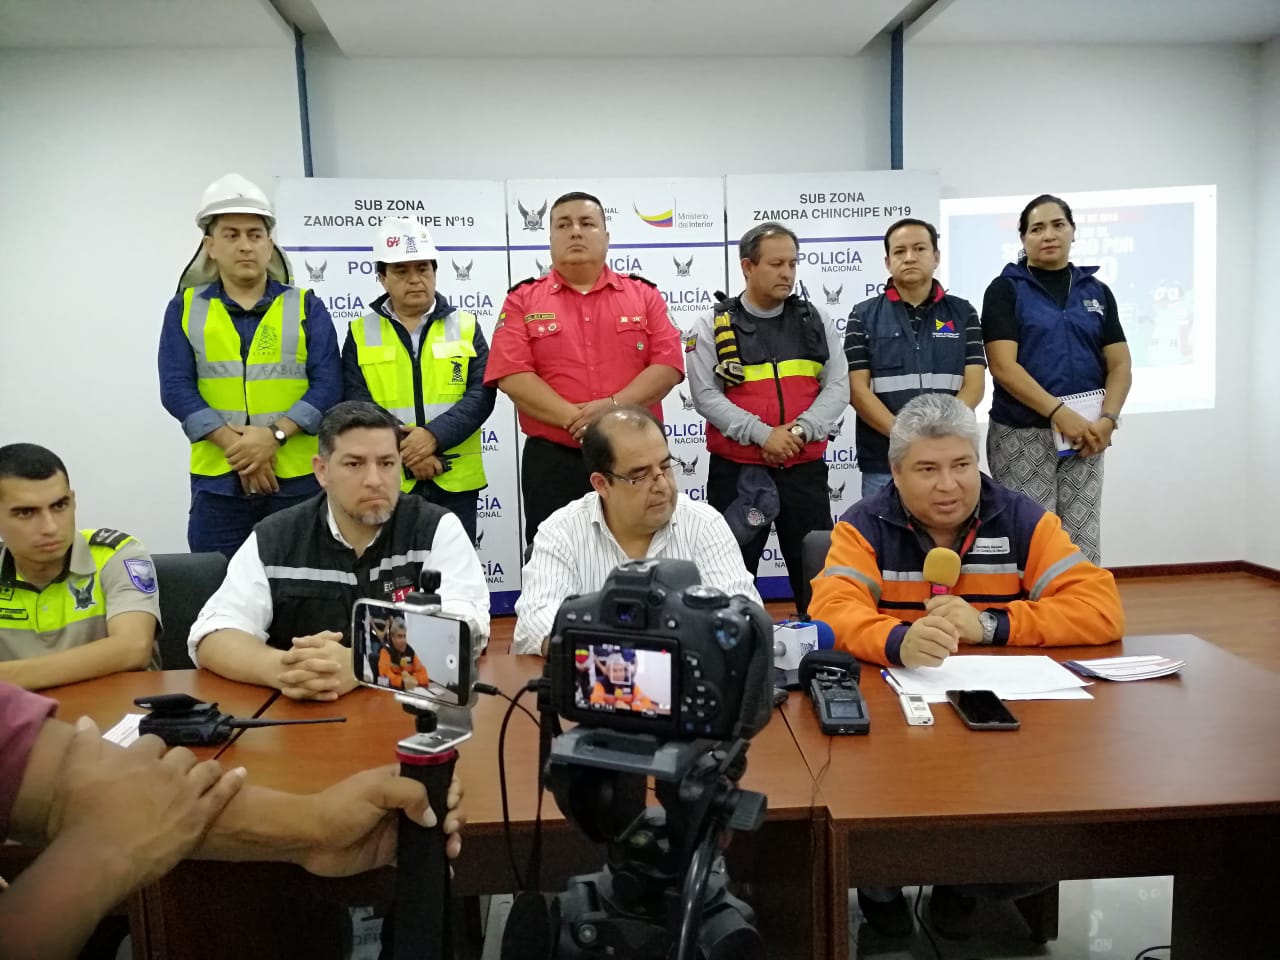 Se fortalecen las capacidades de respuesta por medio de simulacro ante sismo en Zamora